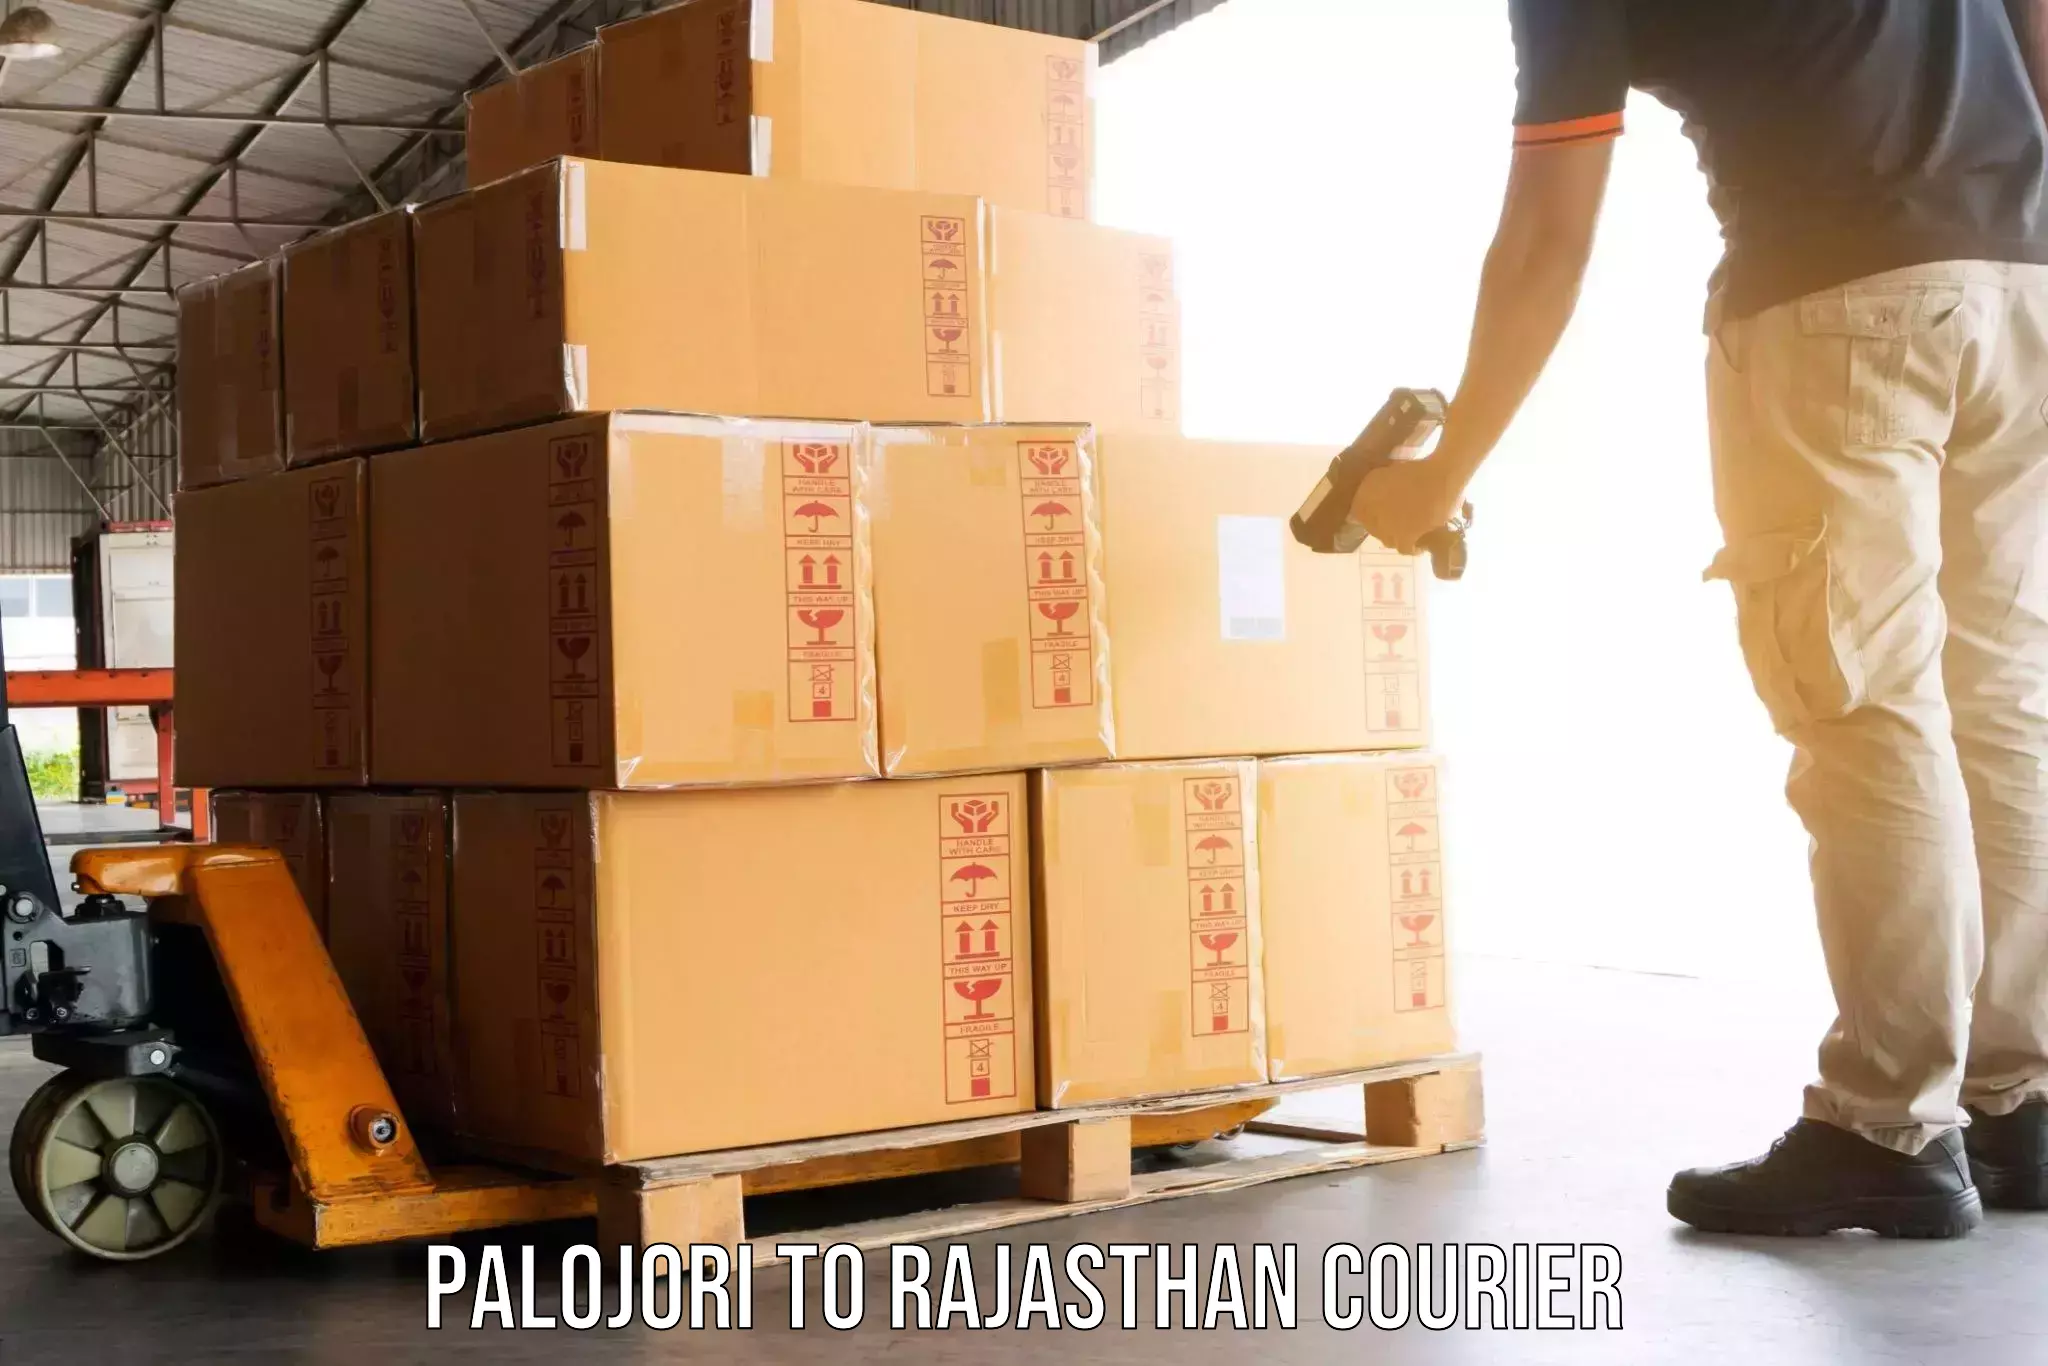 Furniture transport service Palojori to Sultana